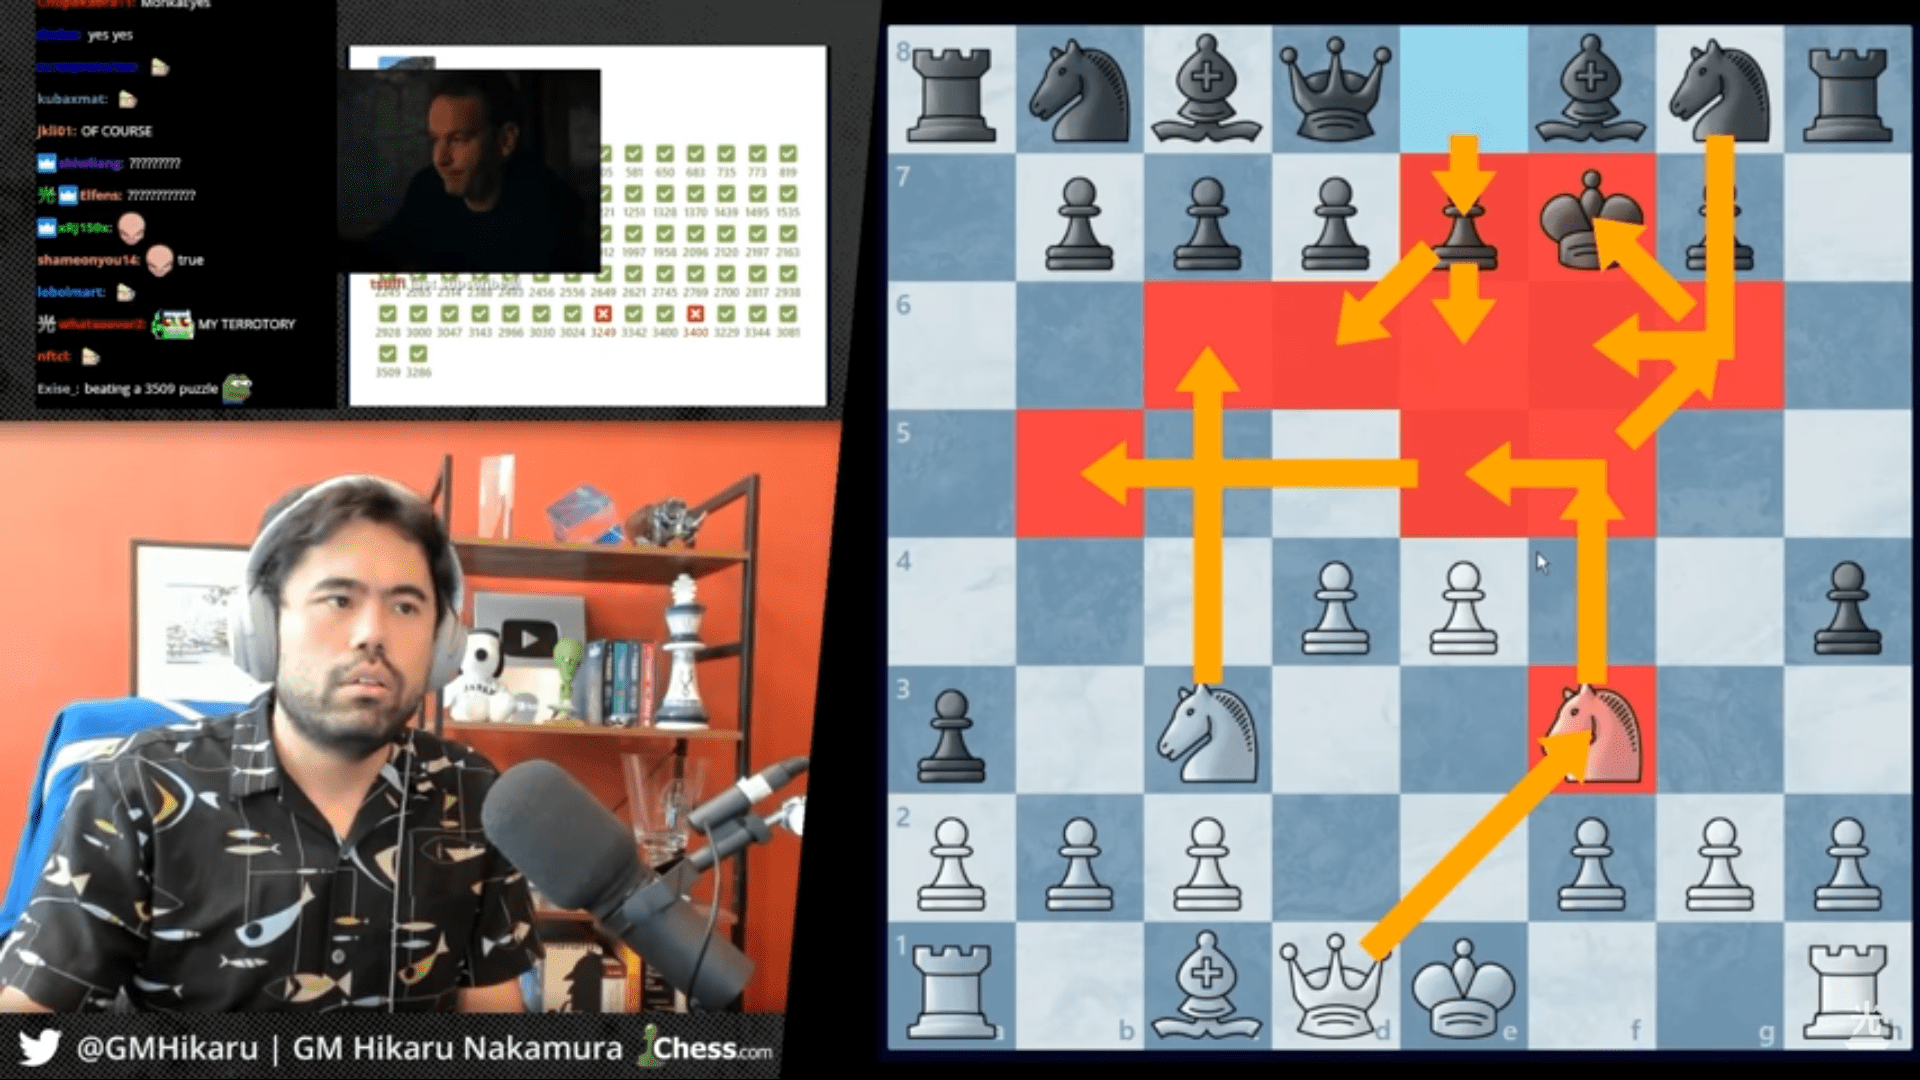 kalolzhix's Blog • Complicações e Desafios no Aperfeiçoamento do Xadrez •